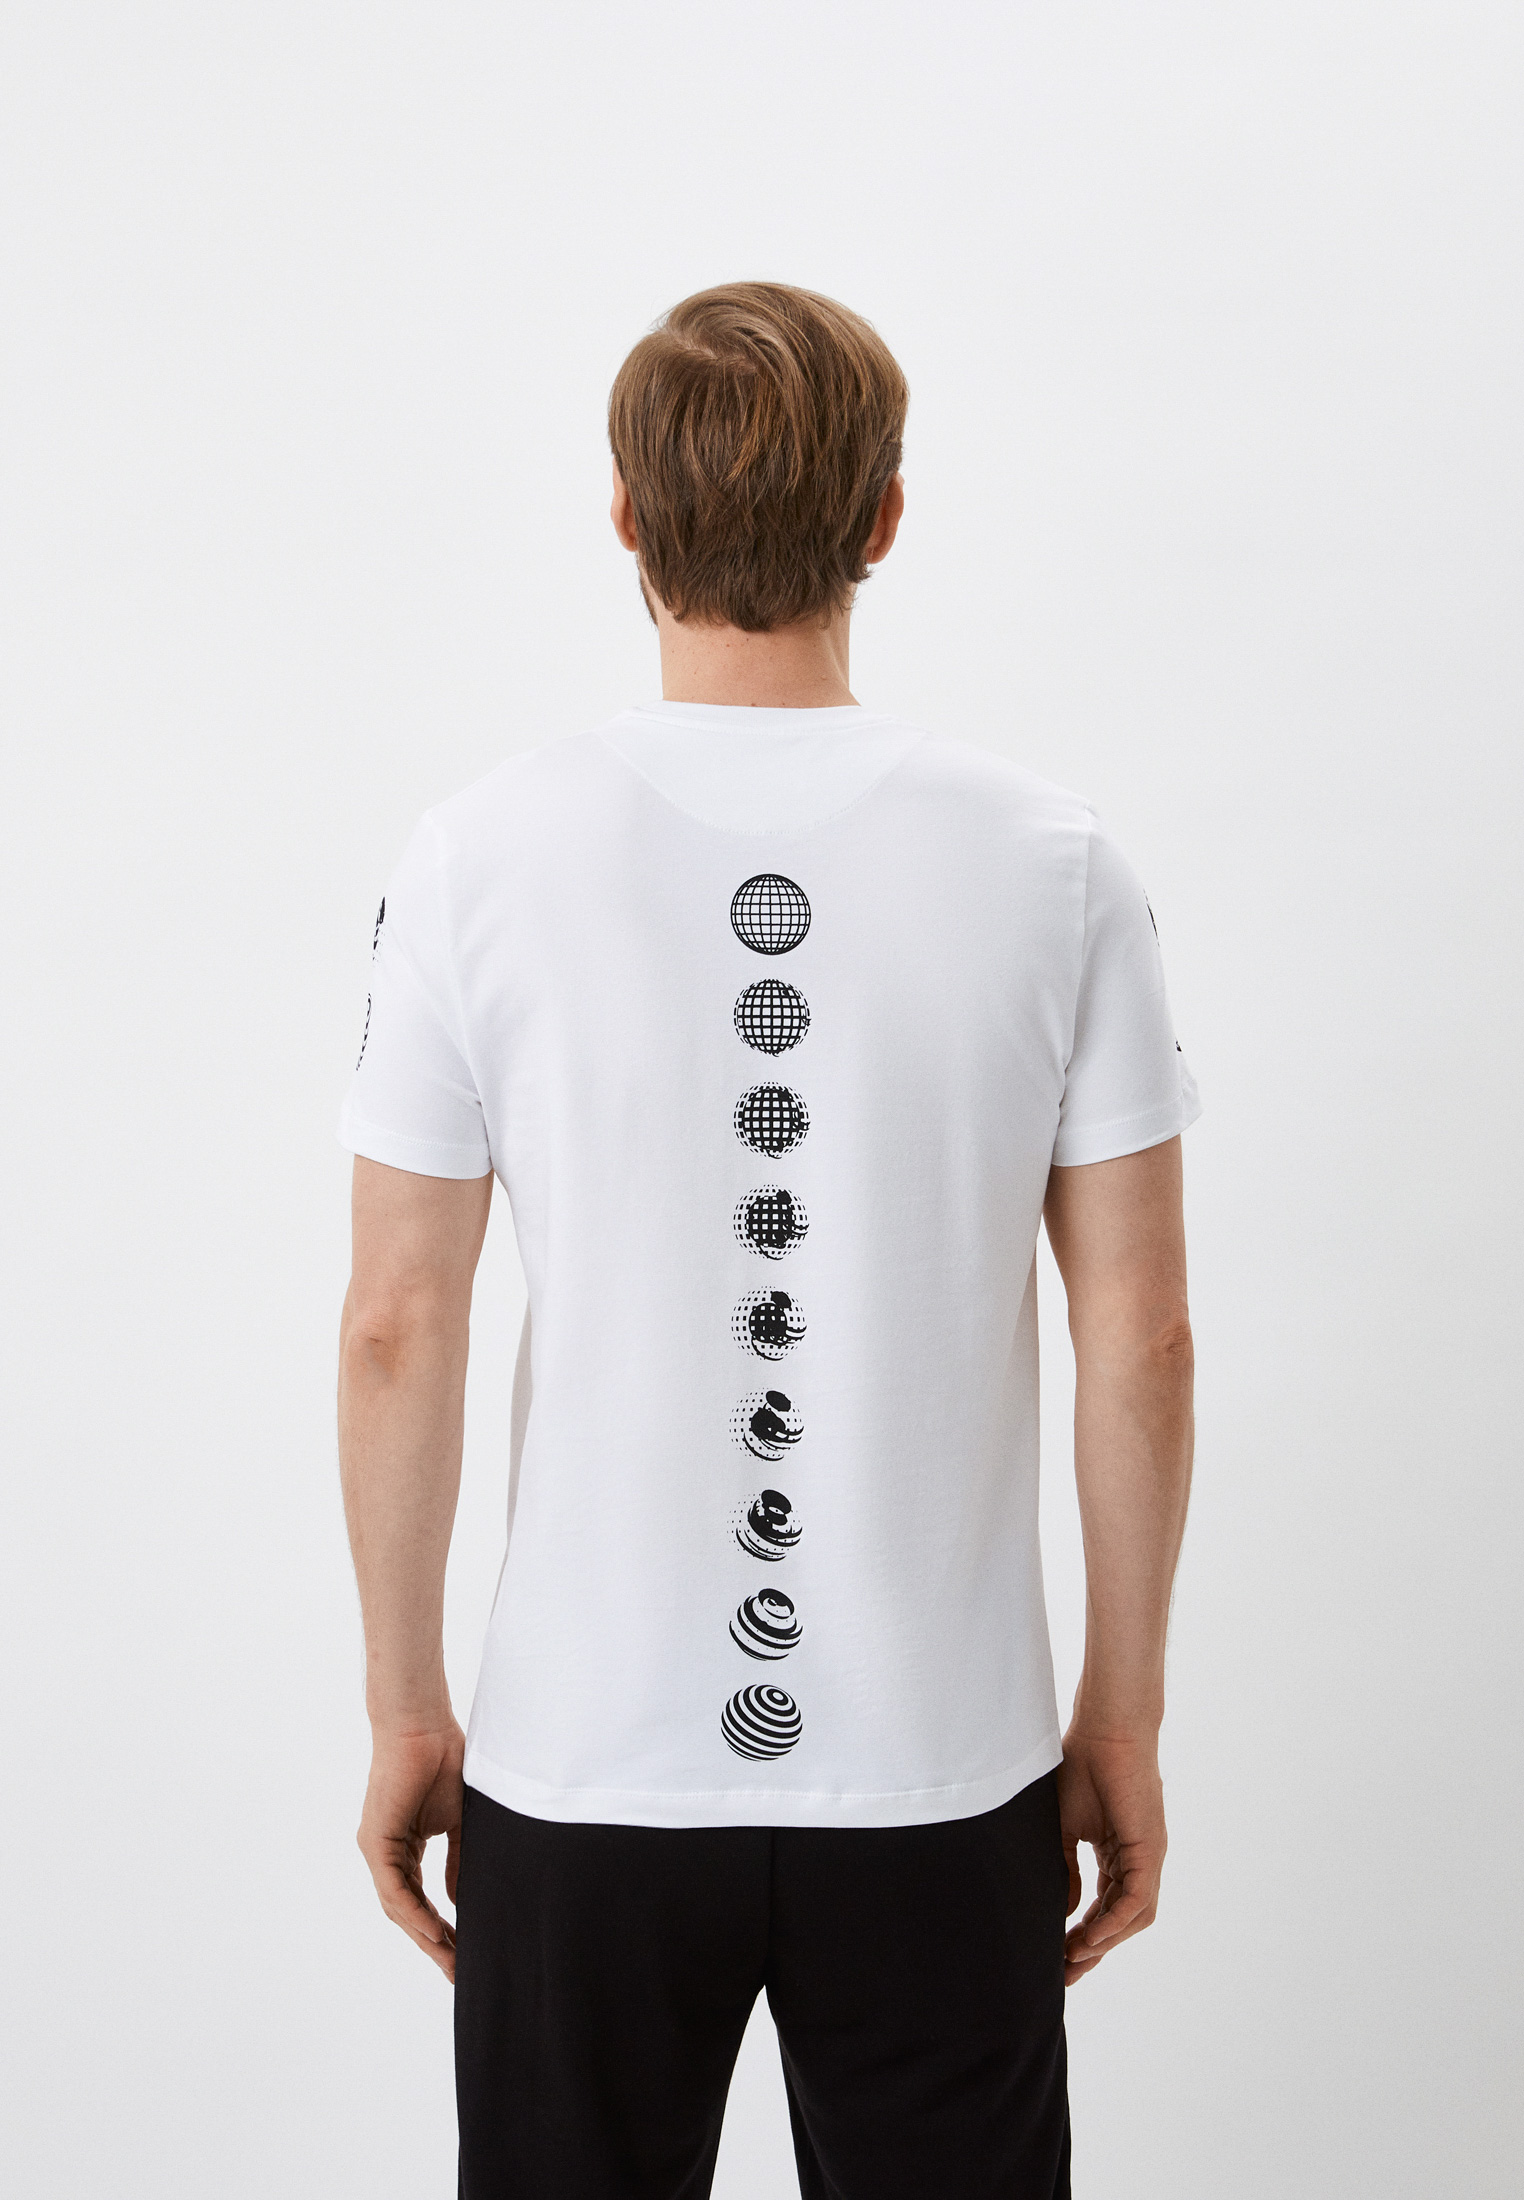 Мужская футболка Bikkembergs (Биккембергс) C 4 101 1H E 2359: изображение 3